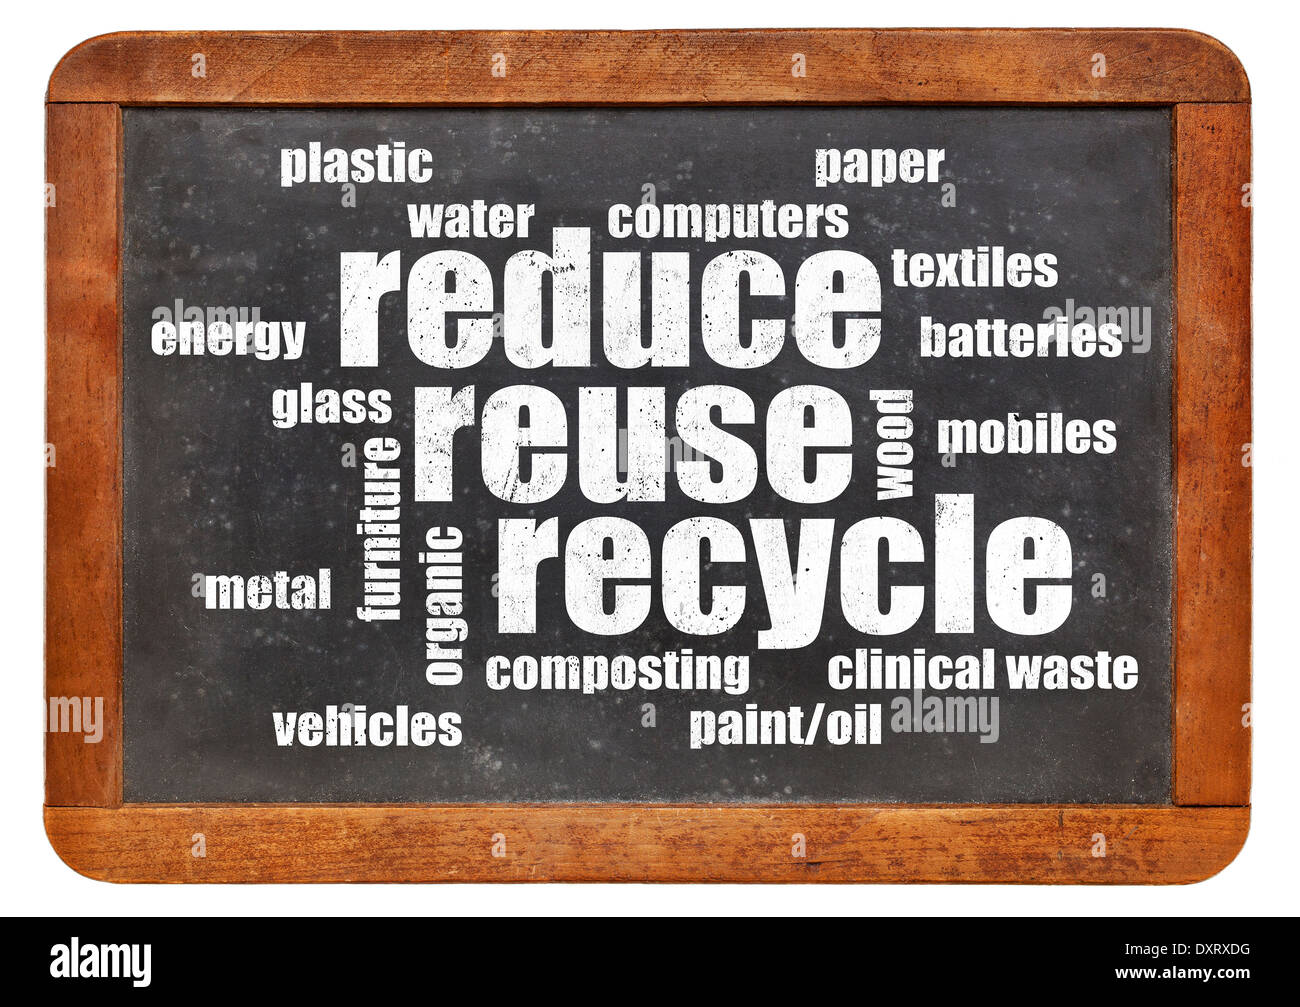 Reducir, reutilizar, reciclar palabra cloud en una pizarra vintage Foto de stock